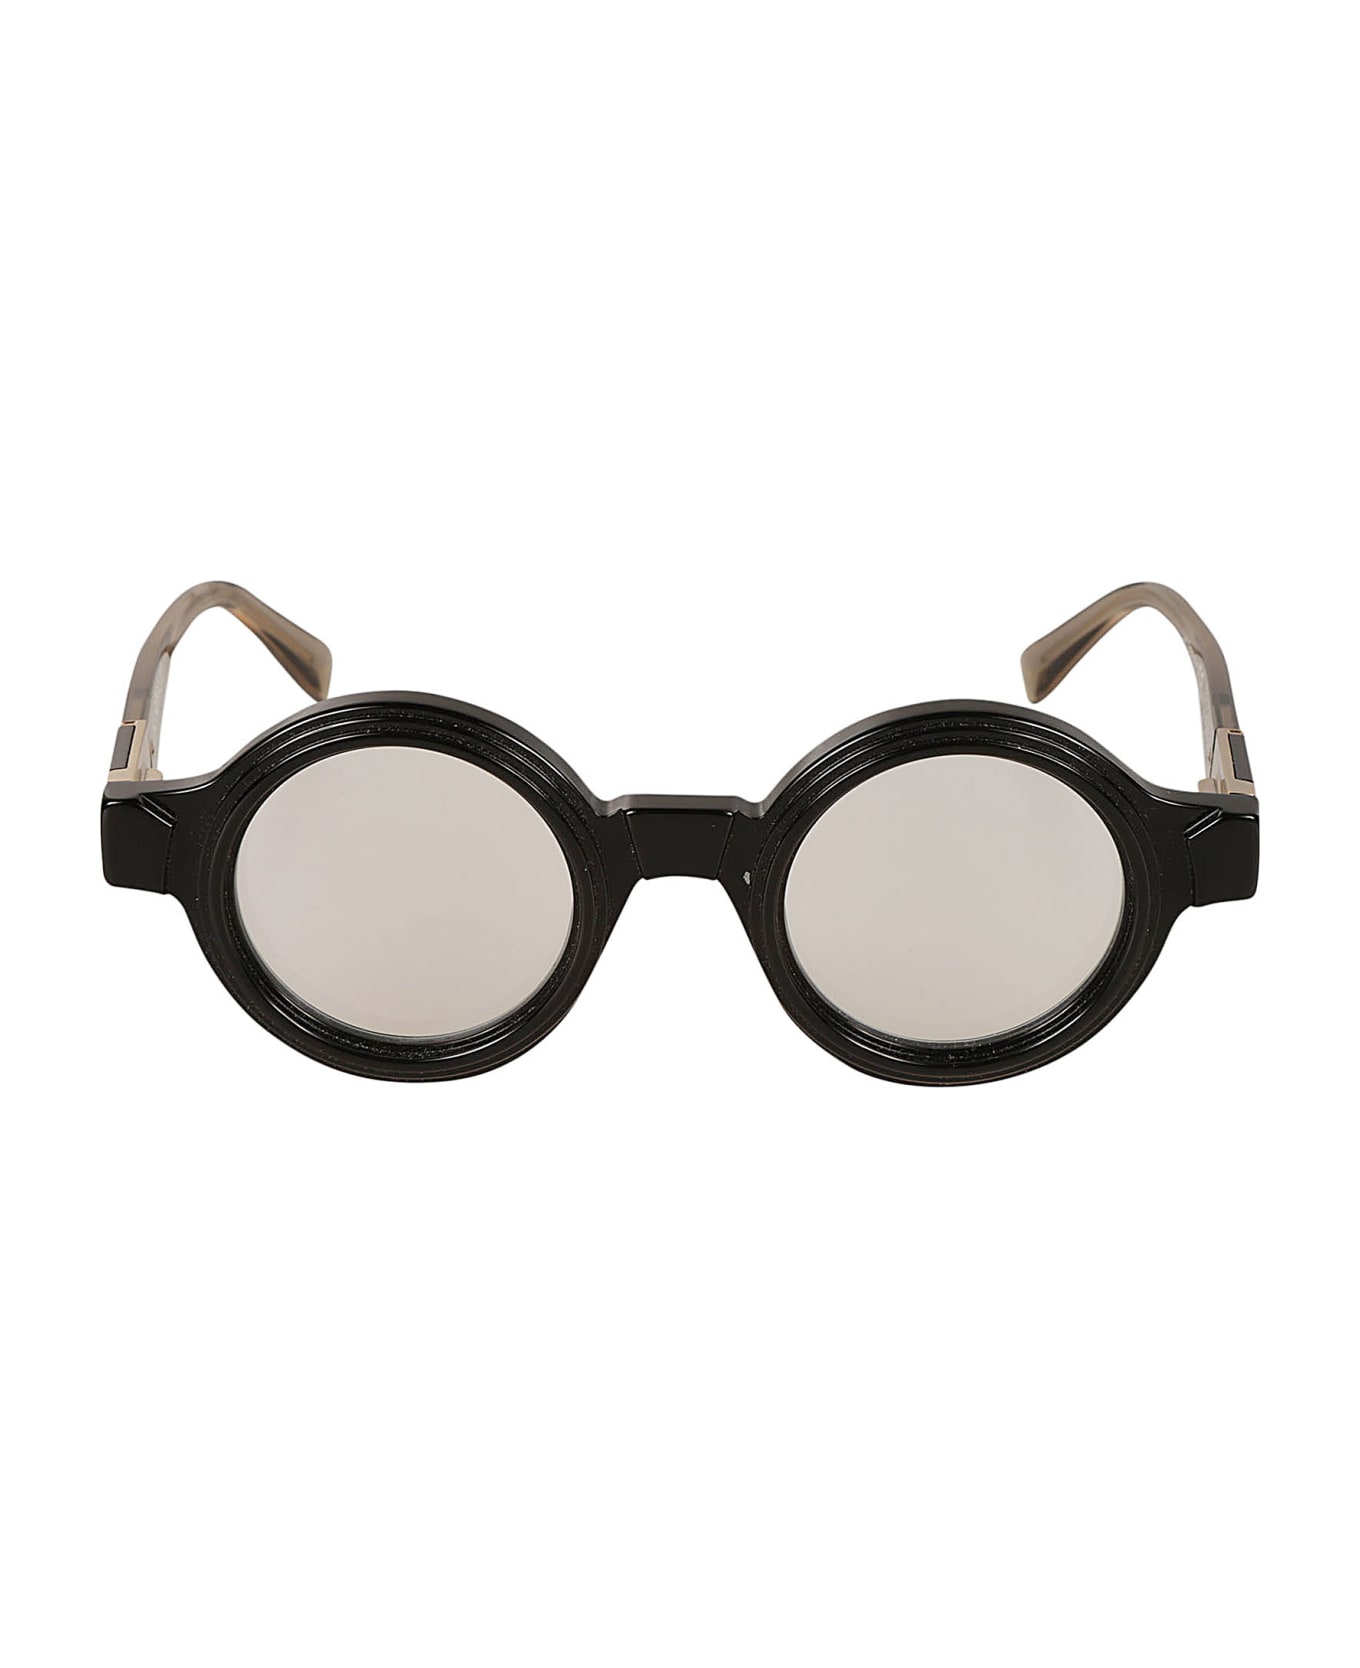 Kuboraum S2 Glasses Glasses - black